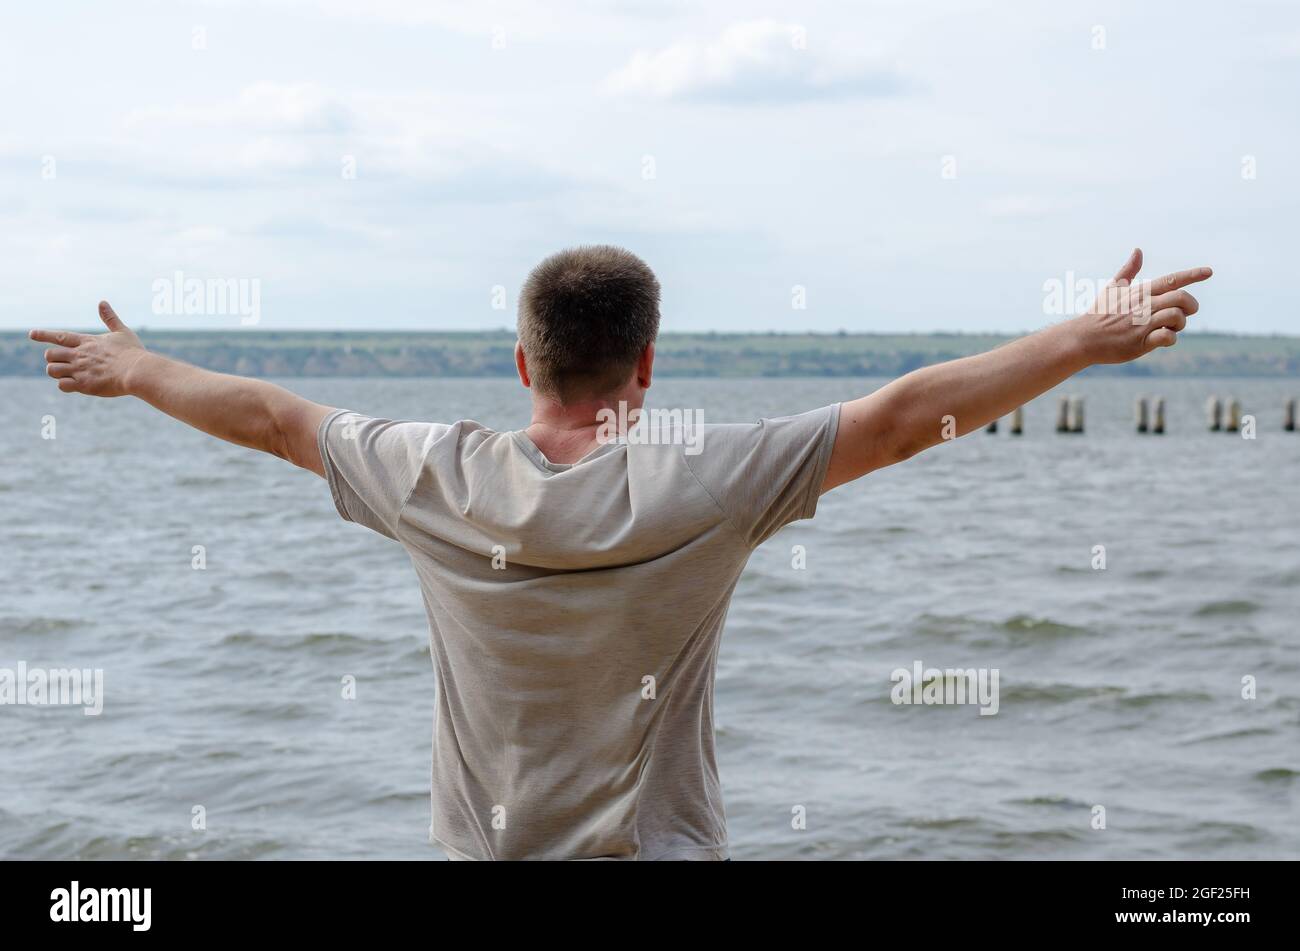 Halblanges Porträt eines erwachsenen Mannes, der am Ufer eines breiten Flusses steht. Mann in einem grauen T-Shirt mit kurzen Ärmeln, die Arme an den Seiten ausgestreckt. Re Stockfoto